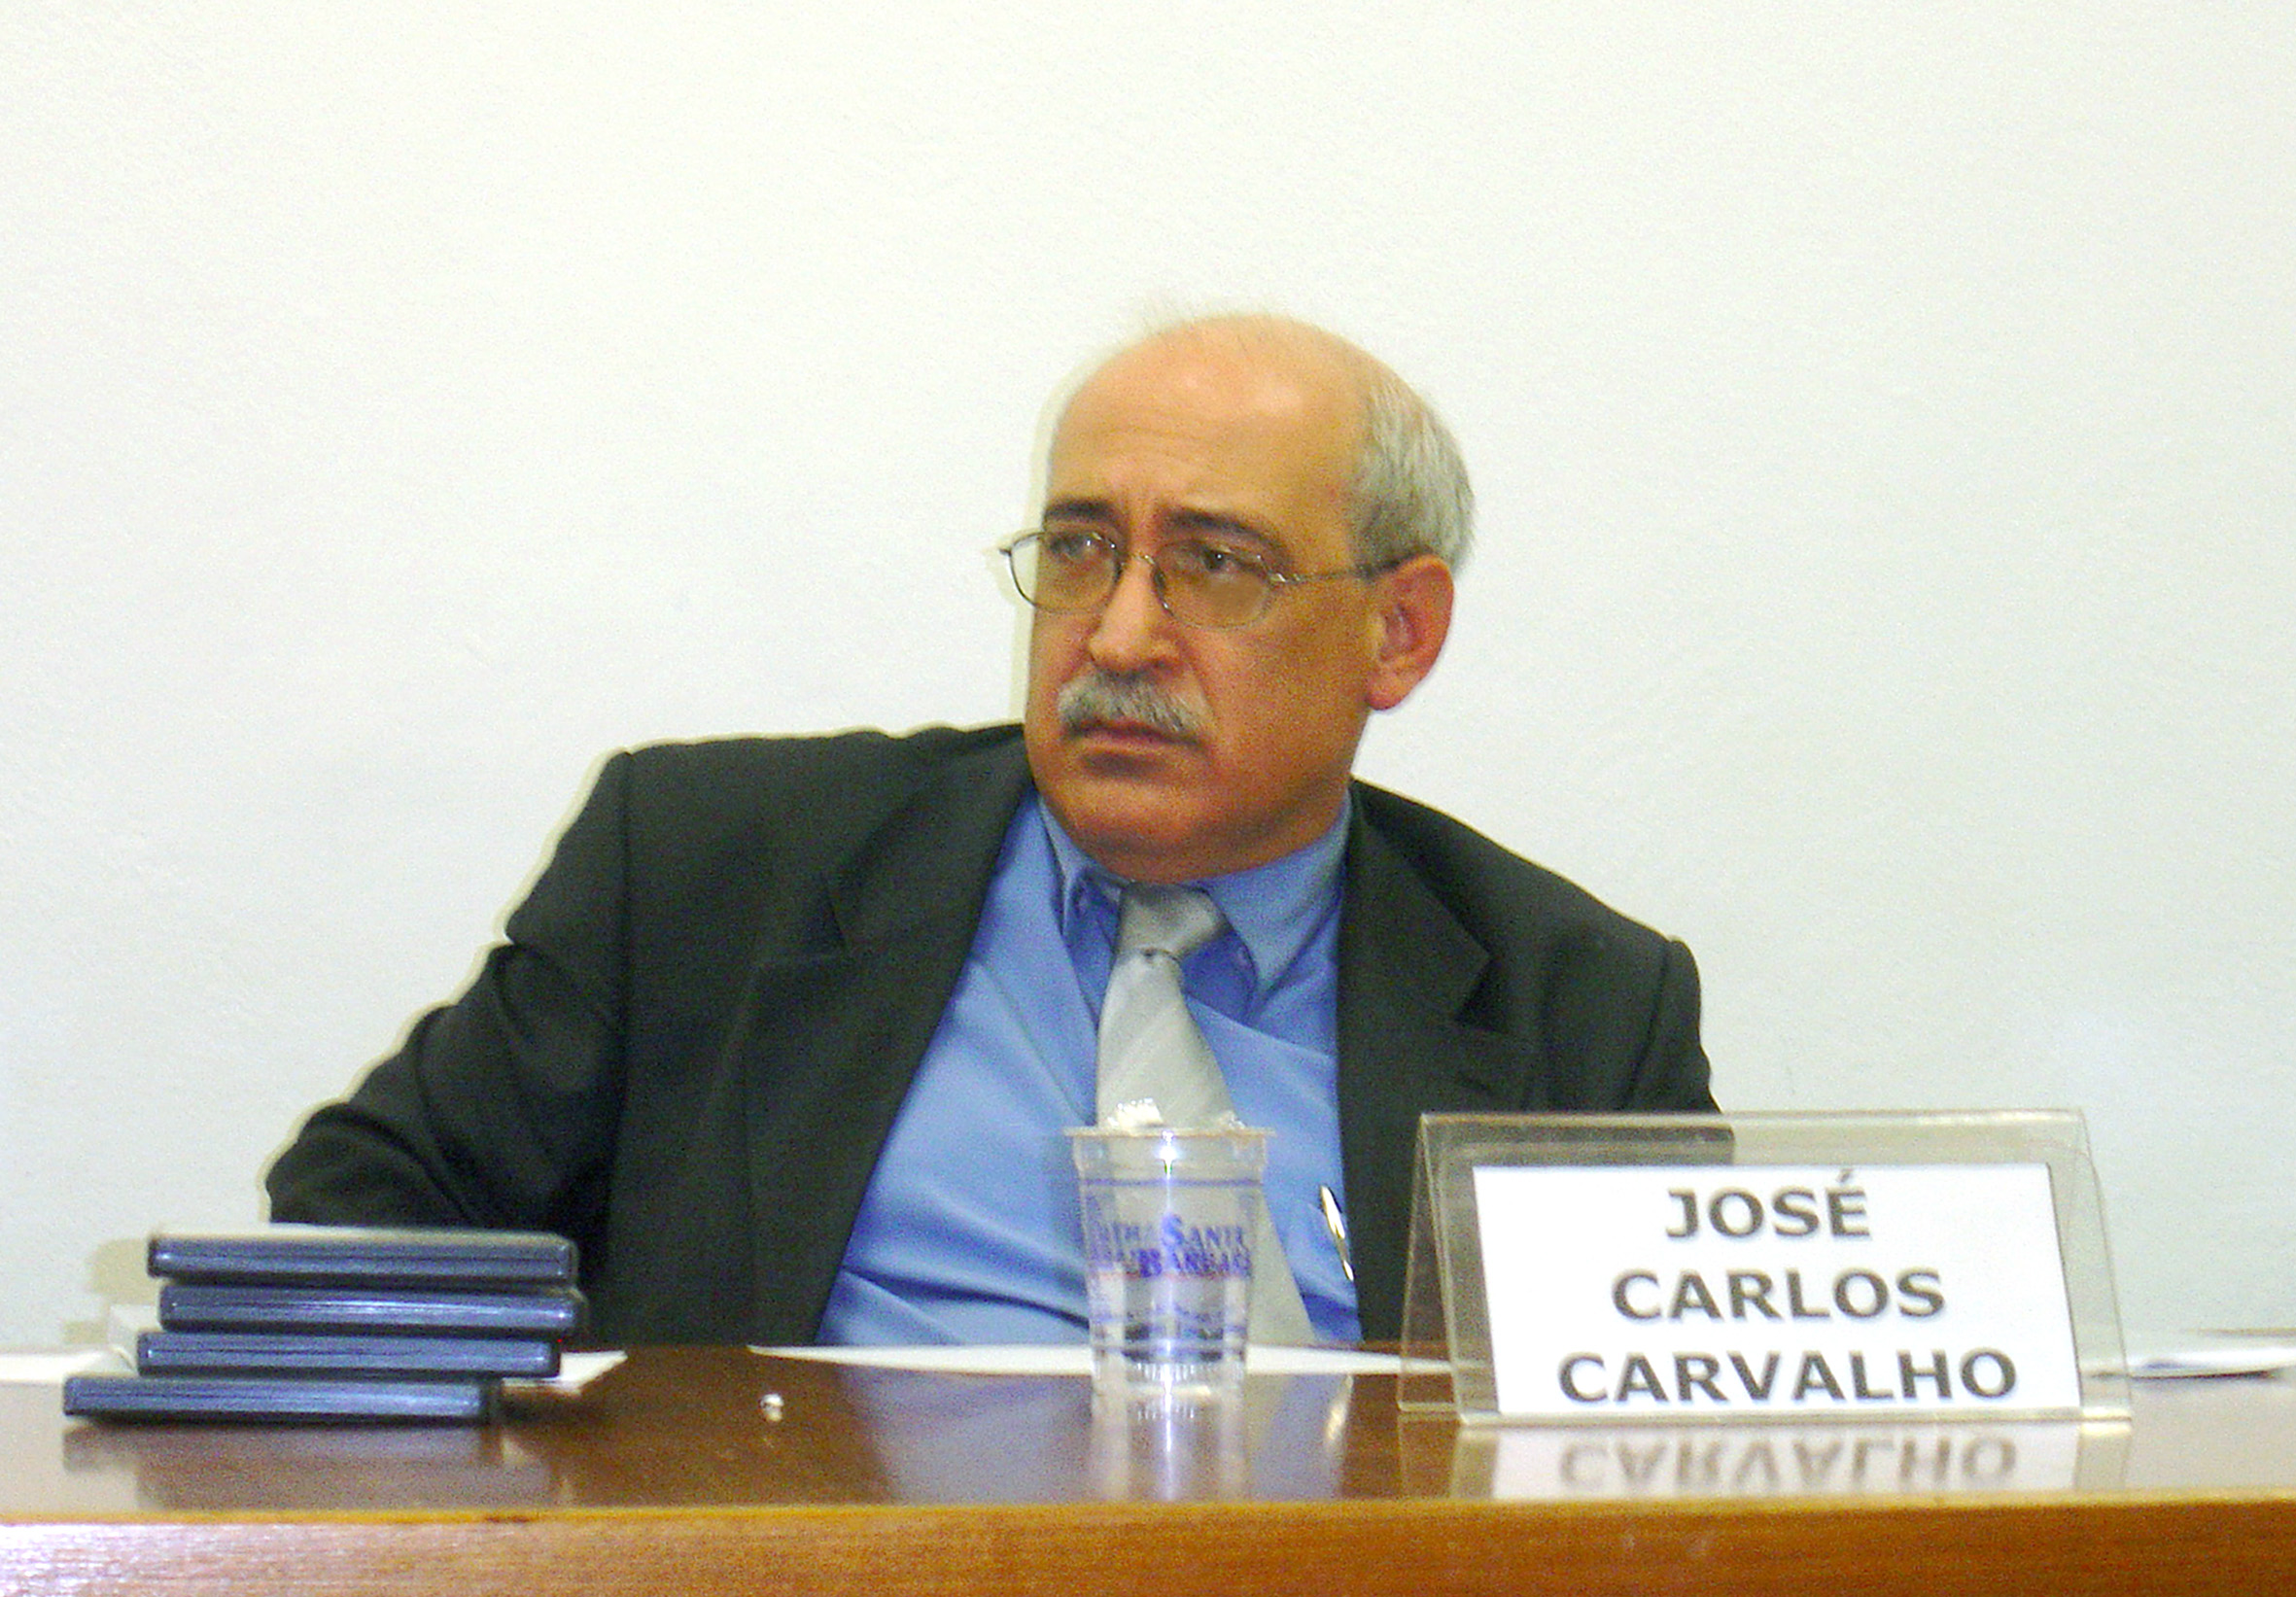 José Carlos Carvalho